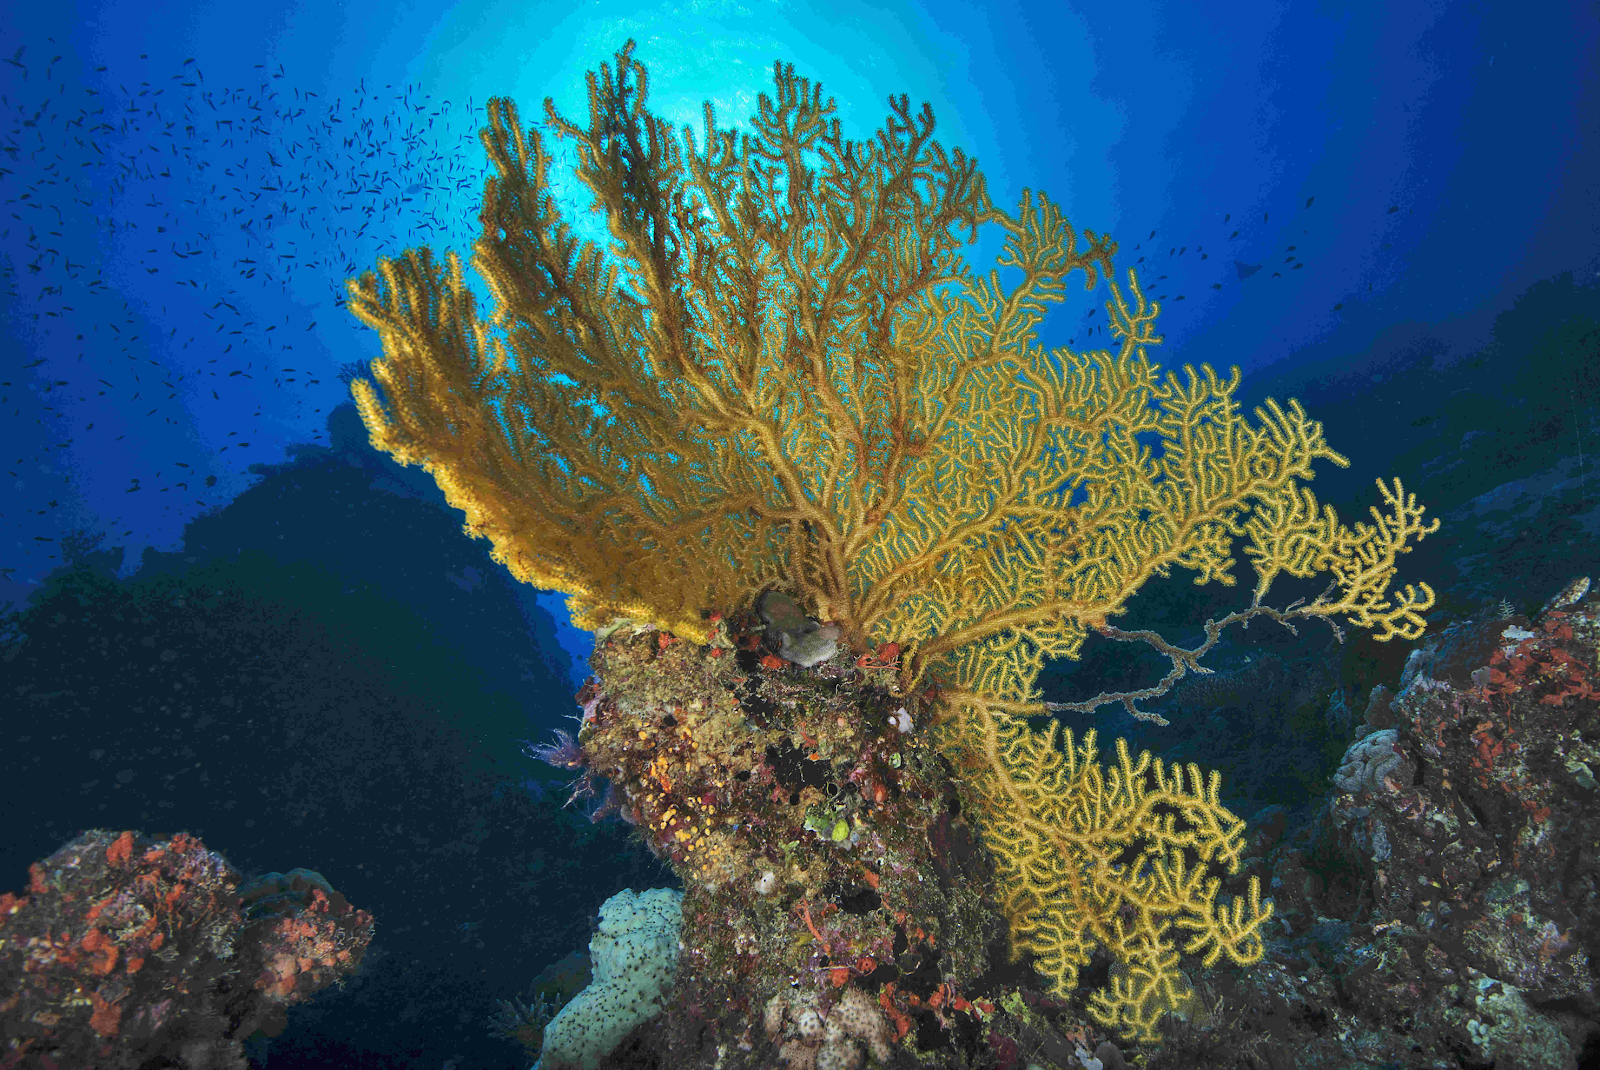 婀娜多姿的軟珊瑚吸引到大家參加濟州島潛水